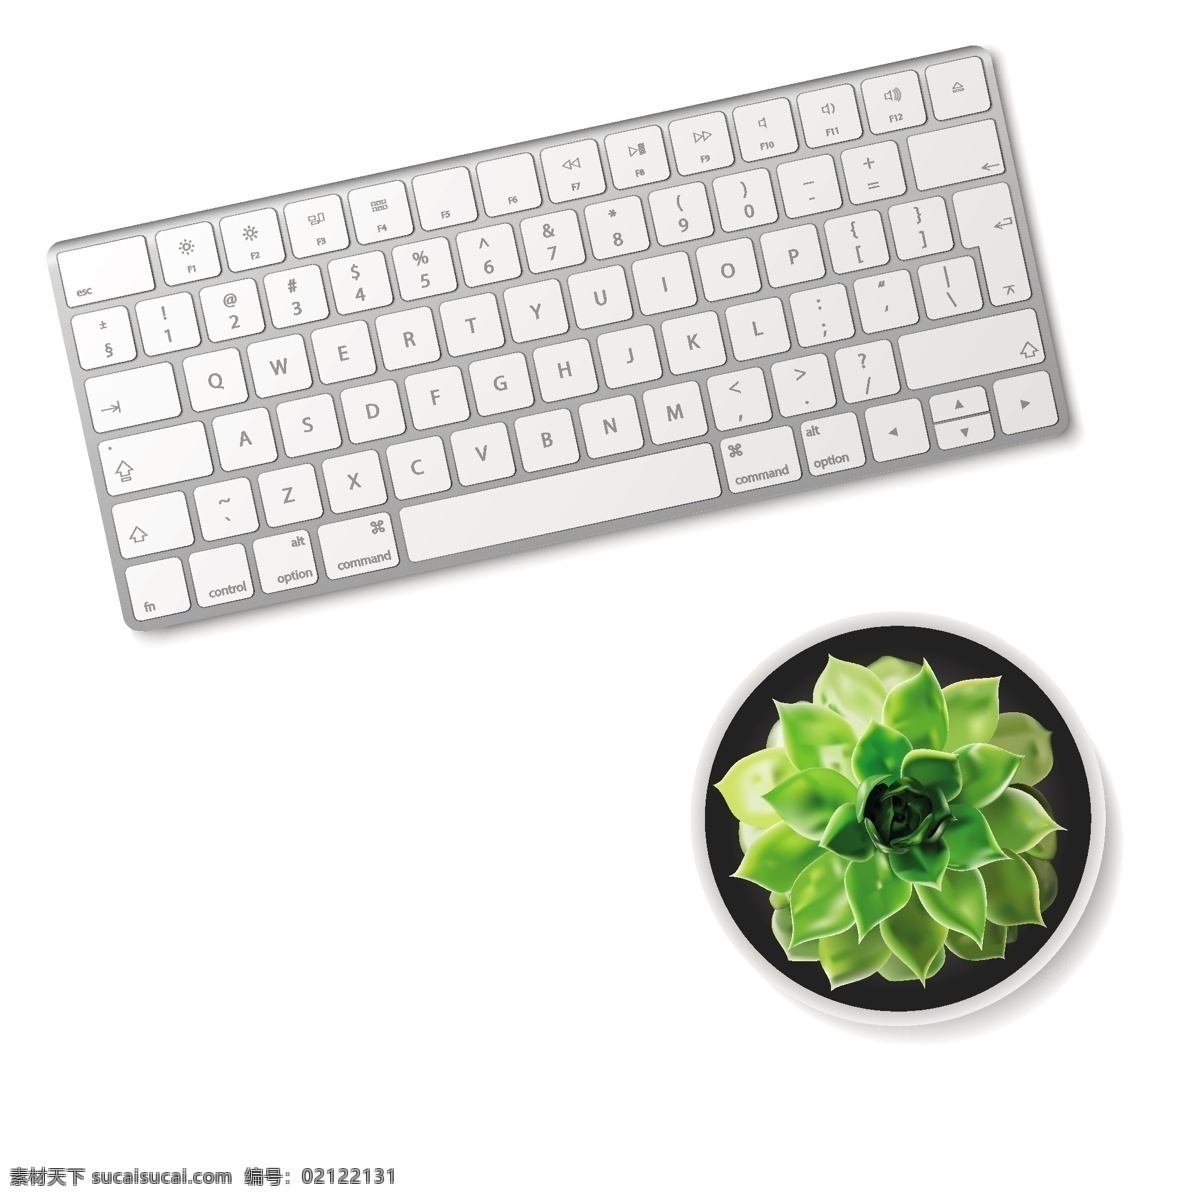 笔记本 苹果电脑 鼠标键盘 电脑配件 网吧键盘 机械键盘 网吧素材